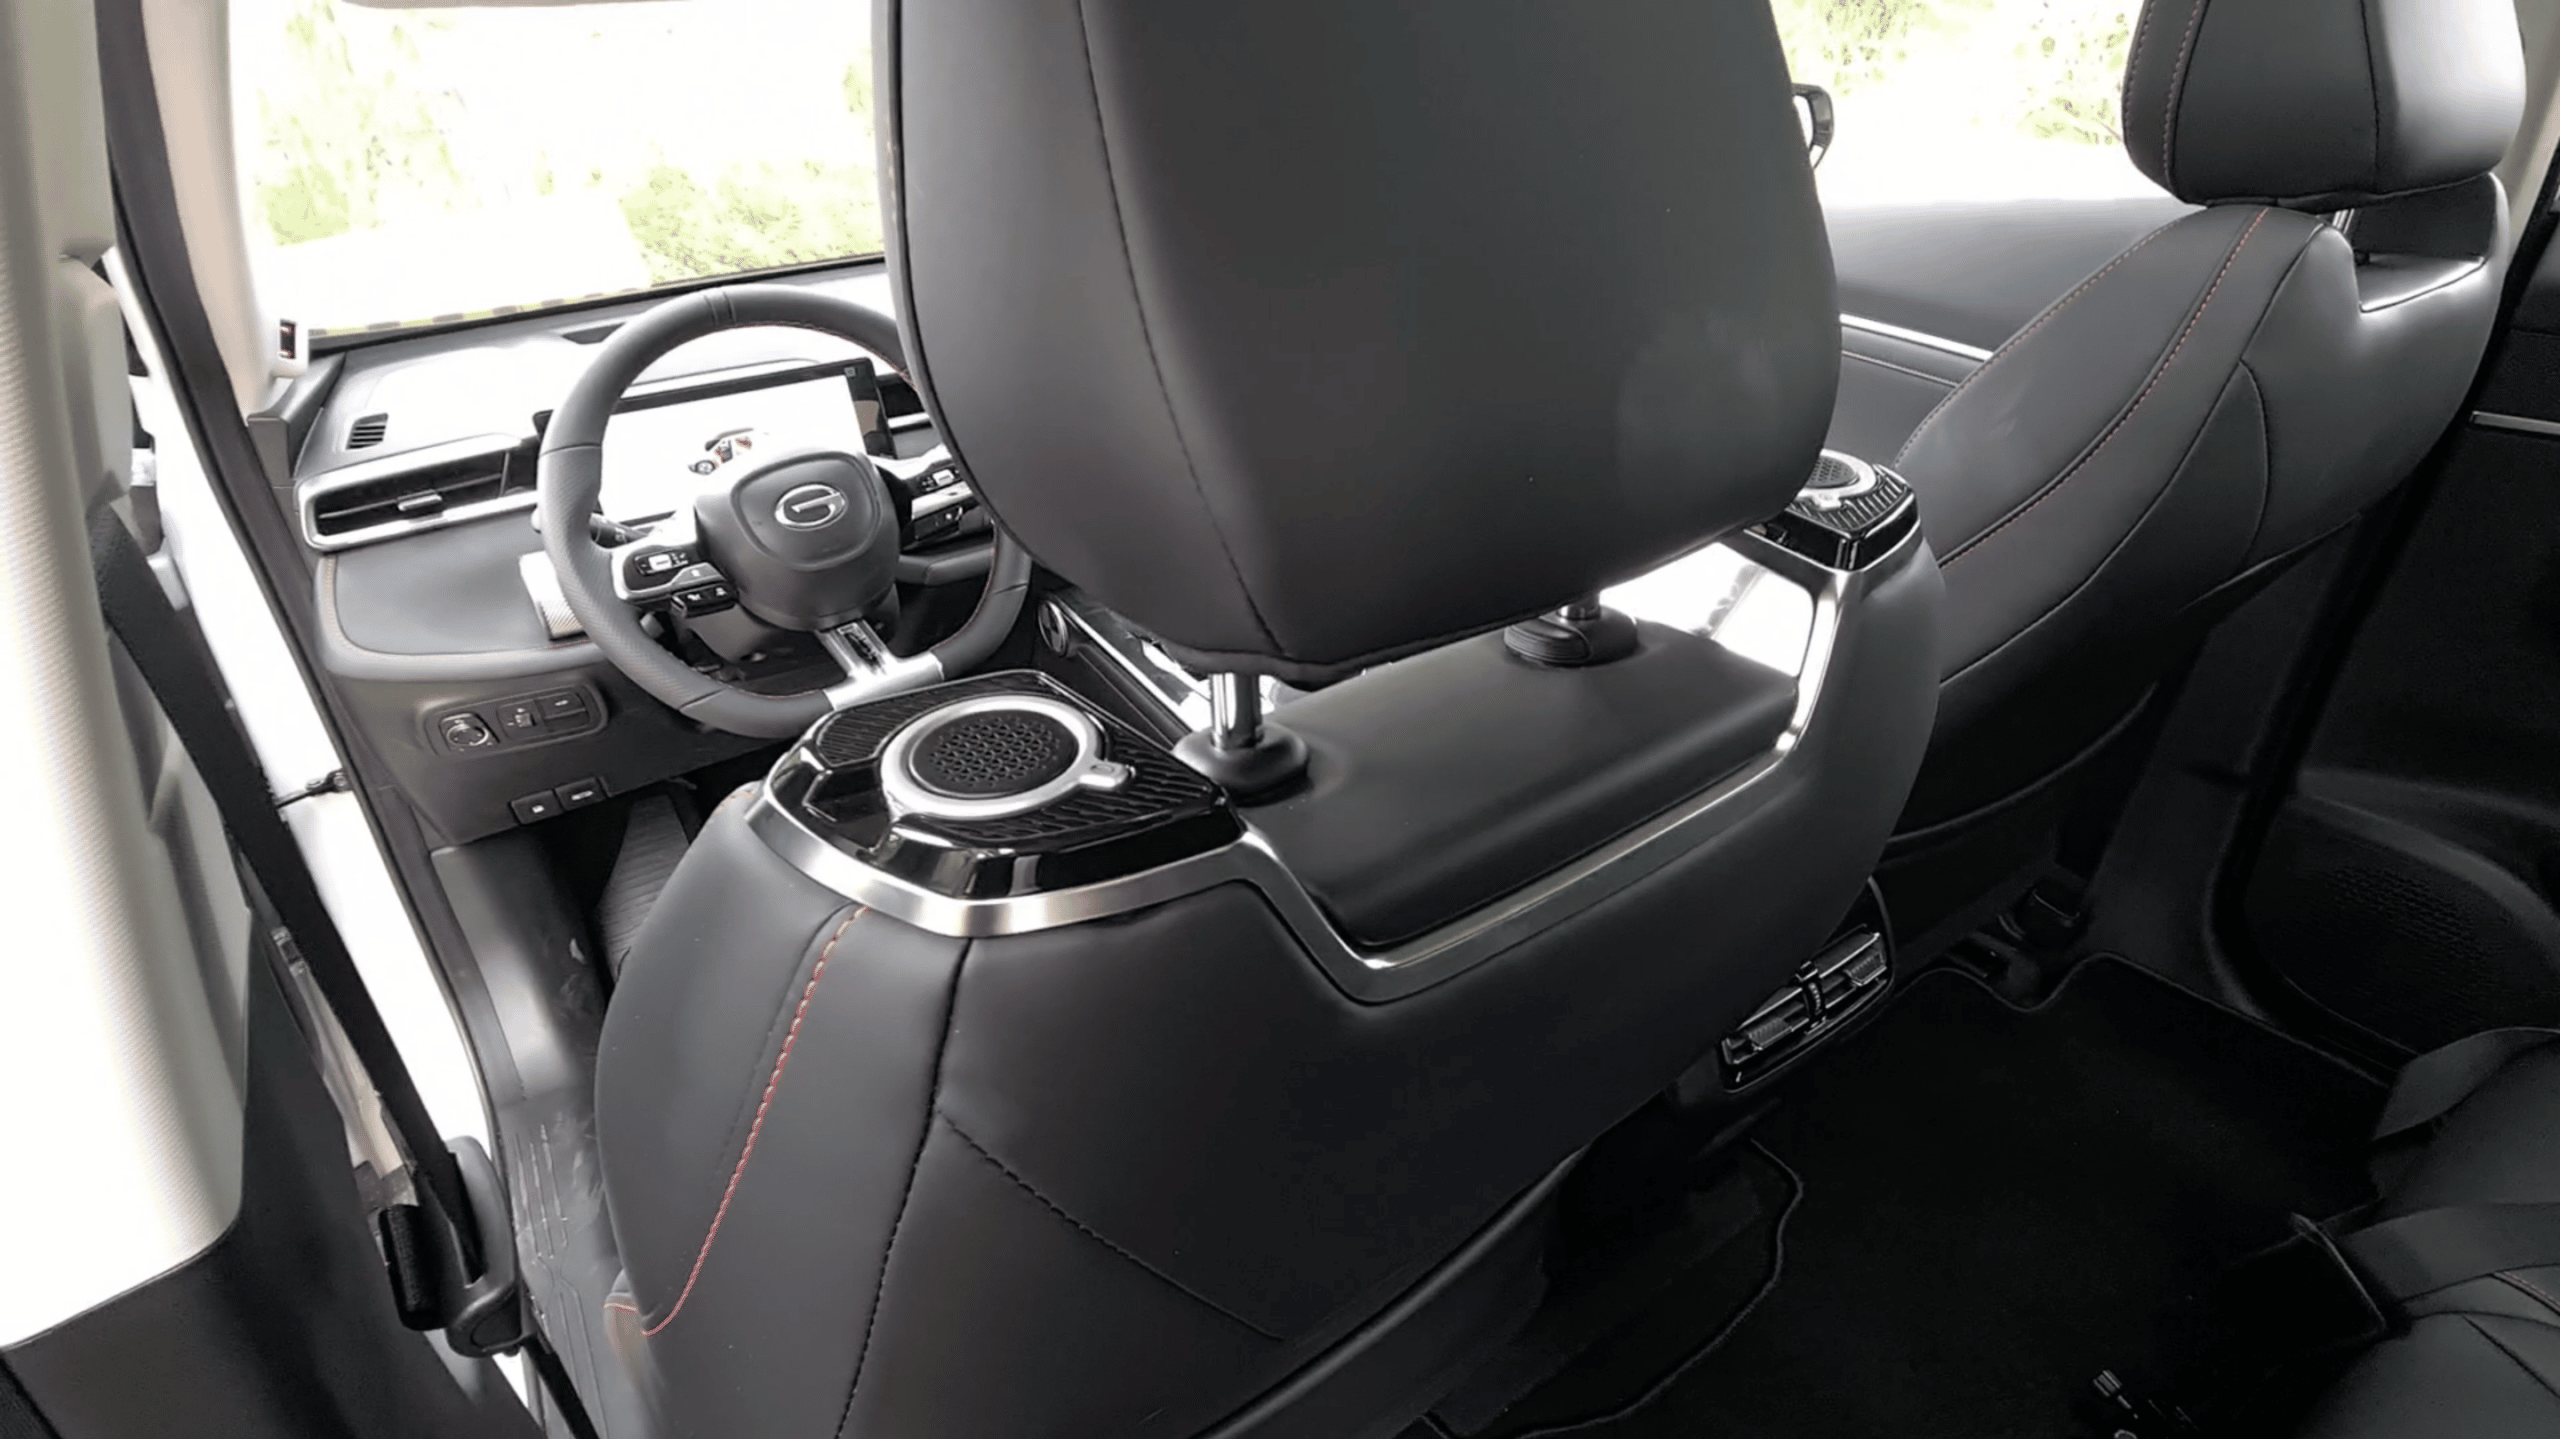 EMKOO Driver Seat Speakers